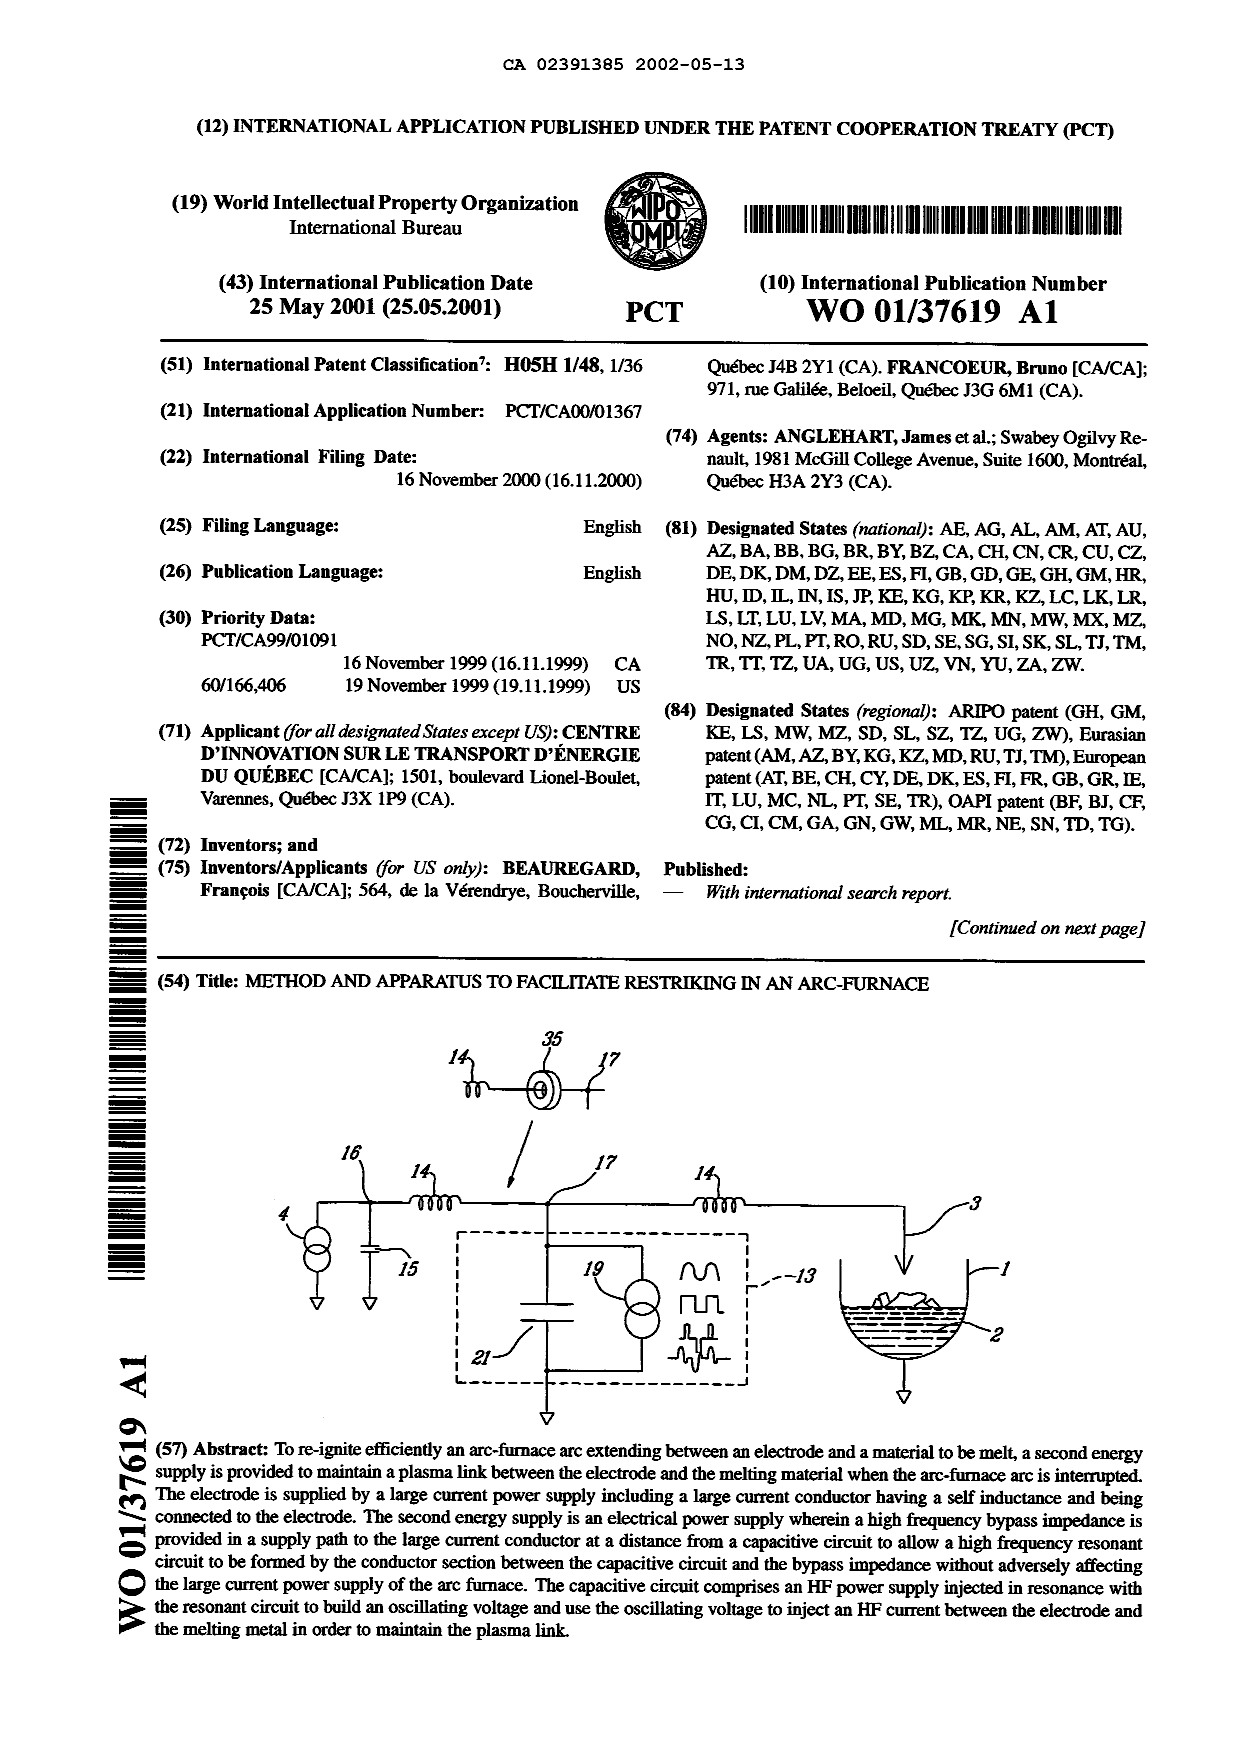 Document de brevet canadien 2391385. Abrégé 20011213. Image 1 de 2